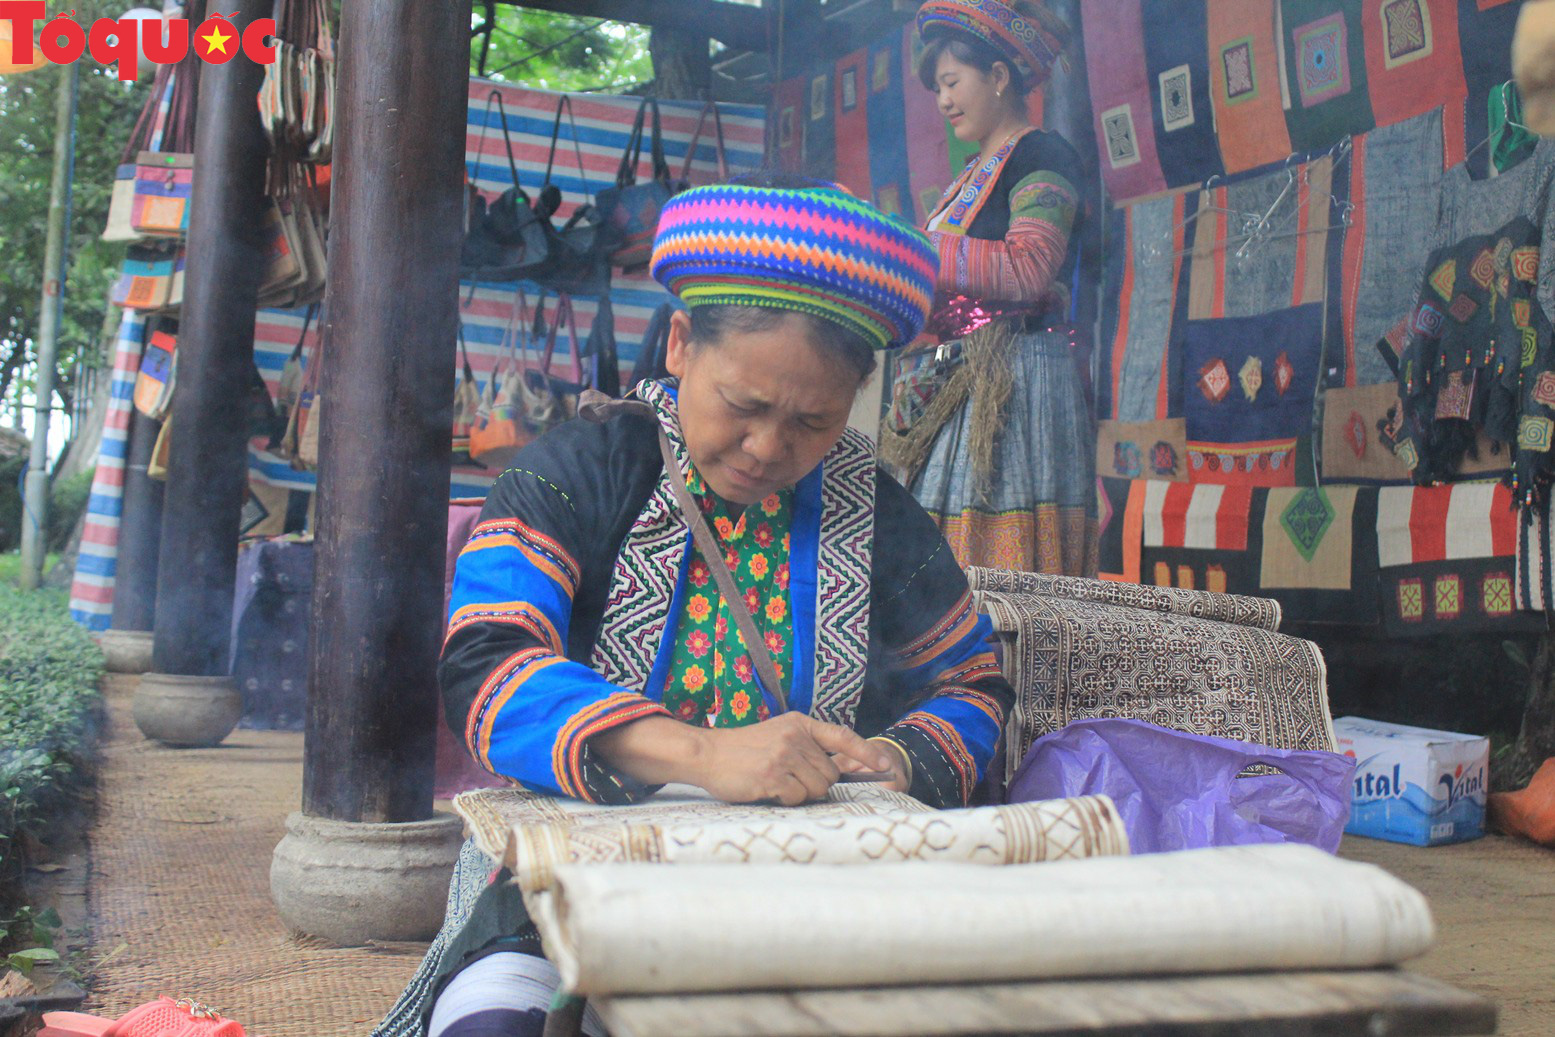 Festival nghề truyền thống Huế ngày càng thu hút các thành phố trên thế giới